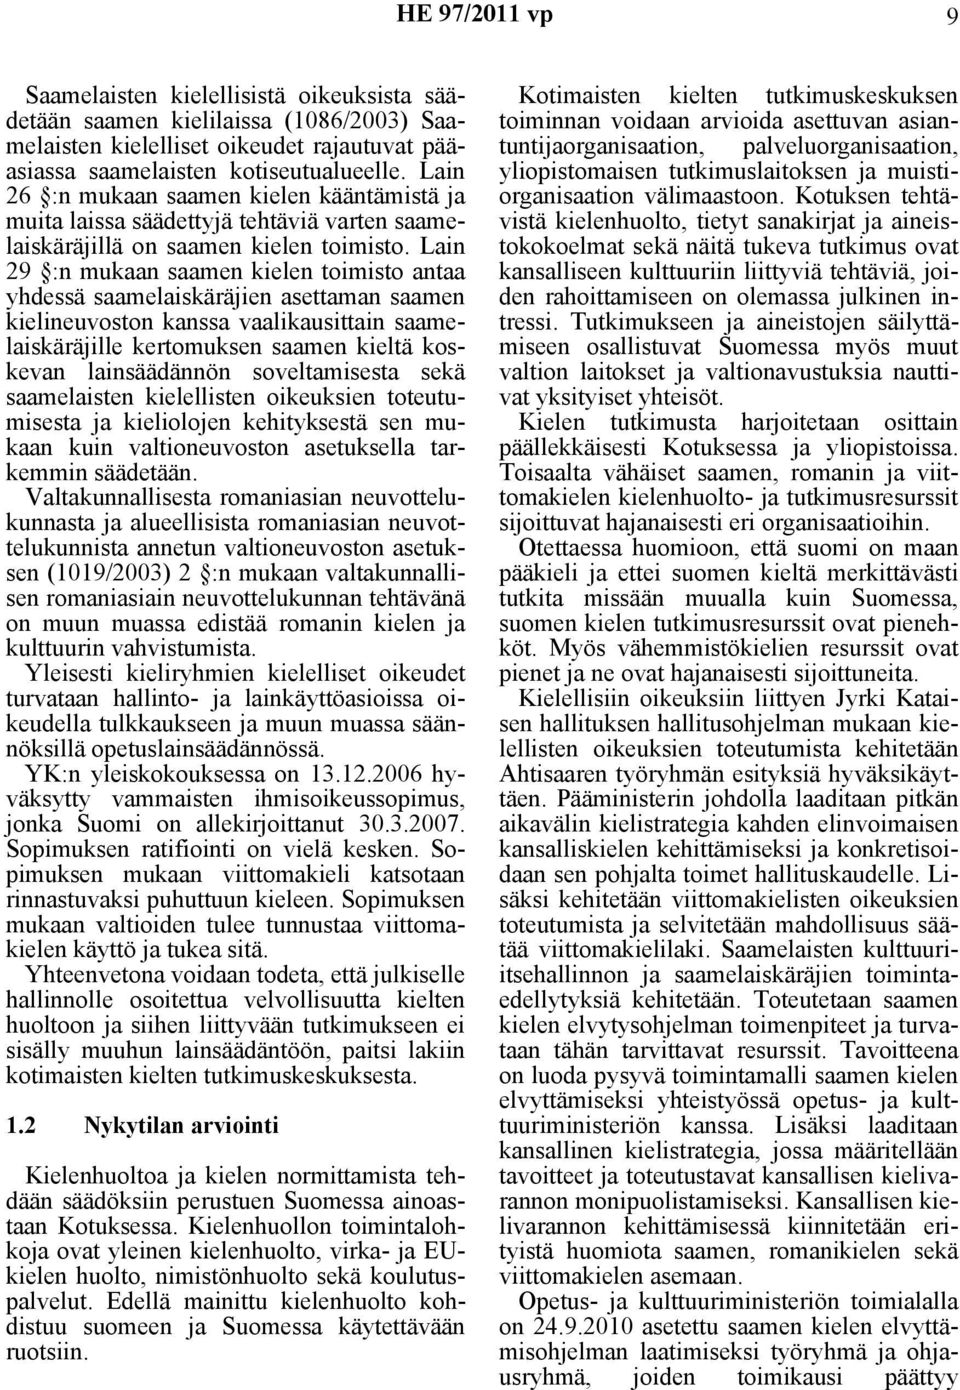 Lain 29 :n mukaan saamen kielen toimisto antaa yhdessä saamelaiskäräjien asettaman saamen kielineuvoston kanssa vaalikausittain saamelaiskäräjille kertomuksen saamen kieltä koskevan lainsäädännön